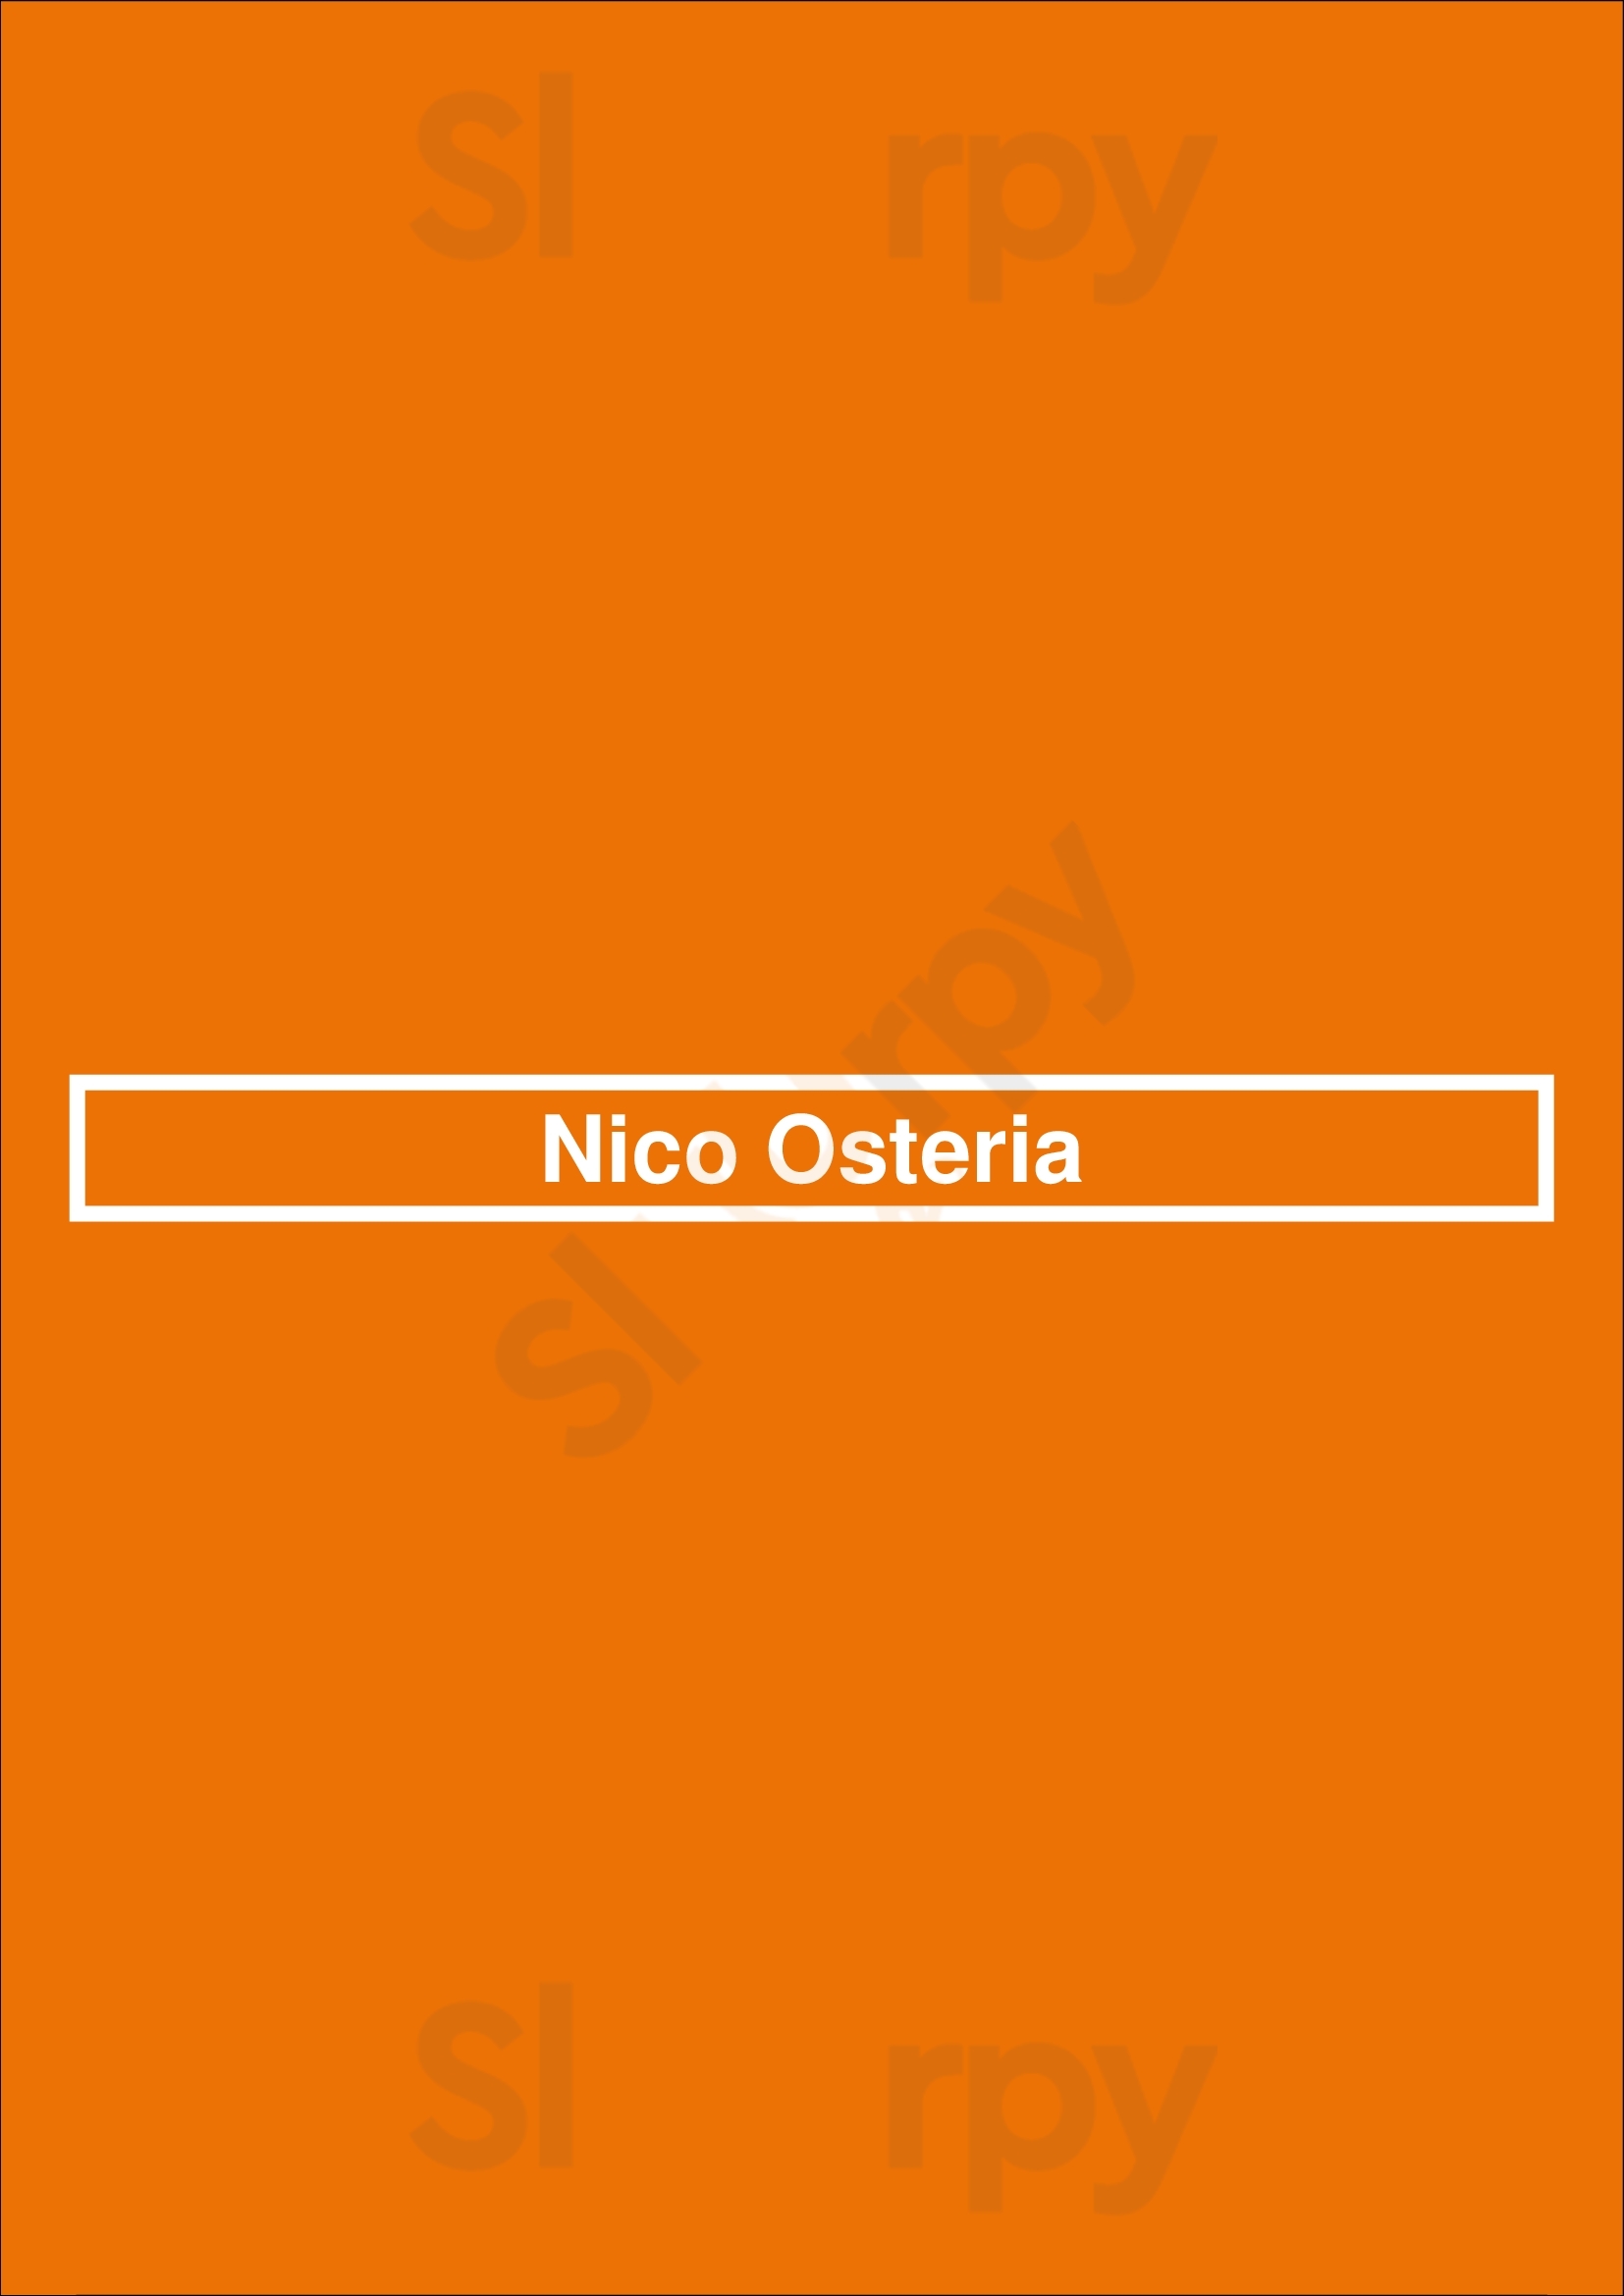 Nico Osteria Chicago Menu - 1